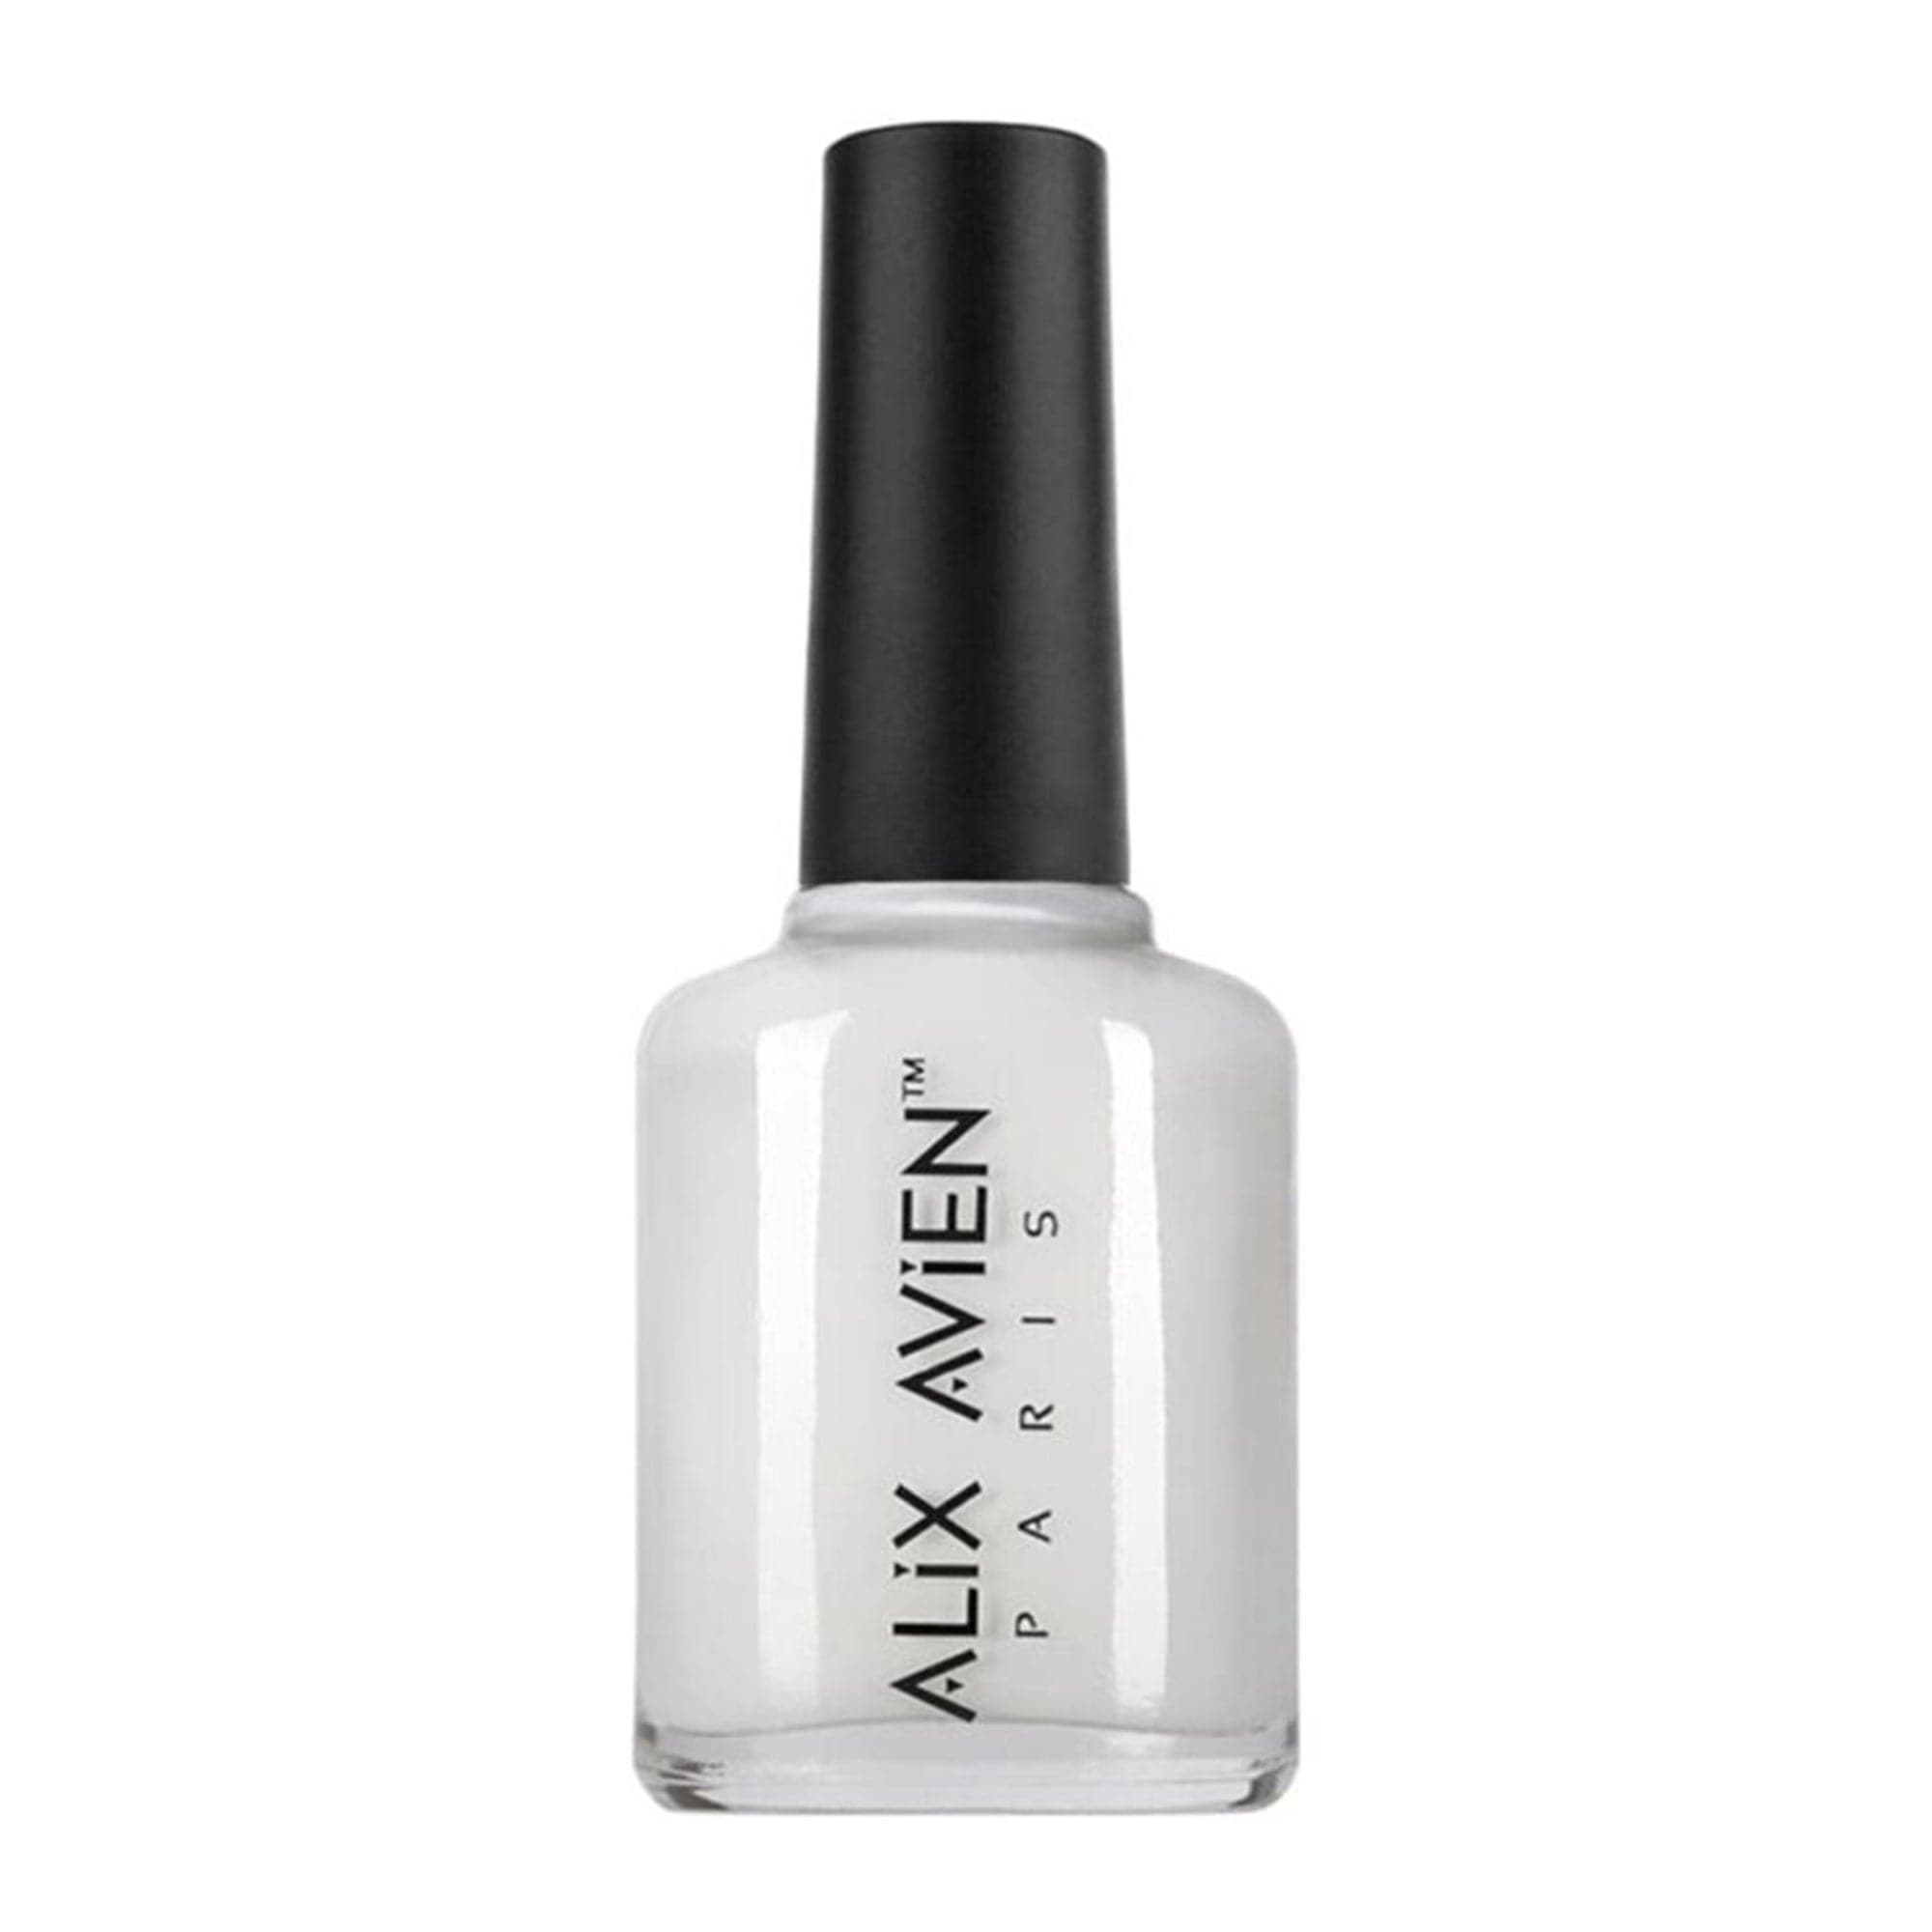 Alix Avien - Nail Polish No.02 (White) - Eson Direct